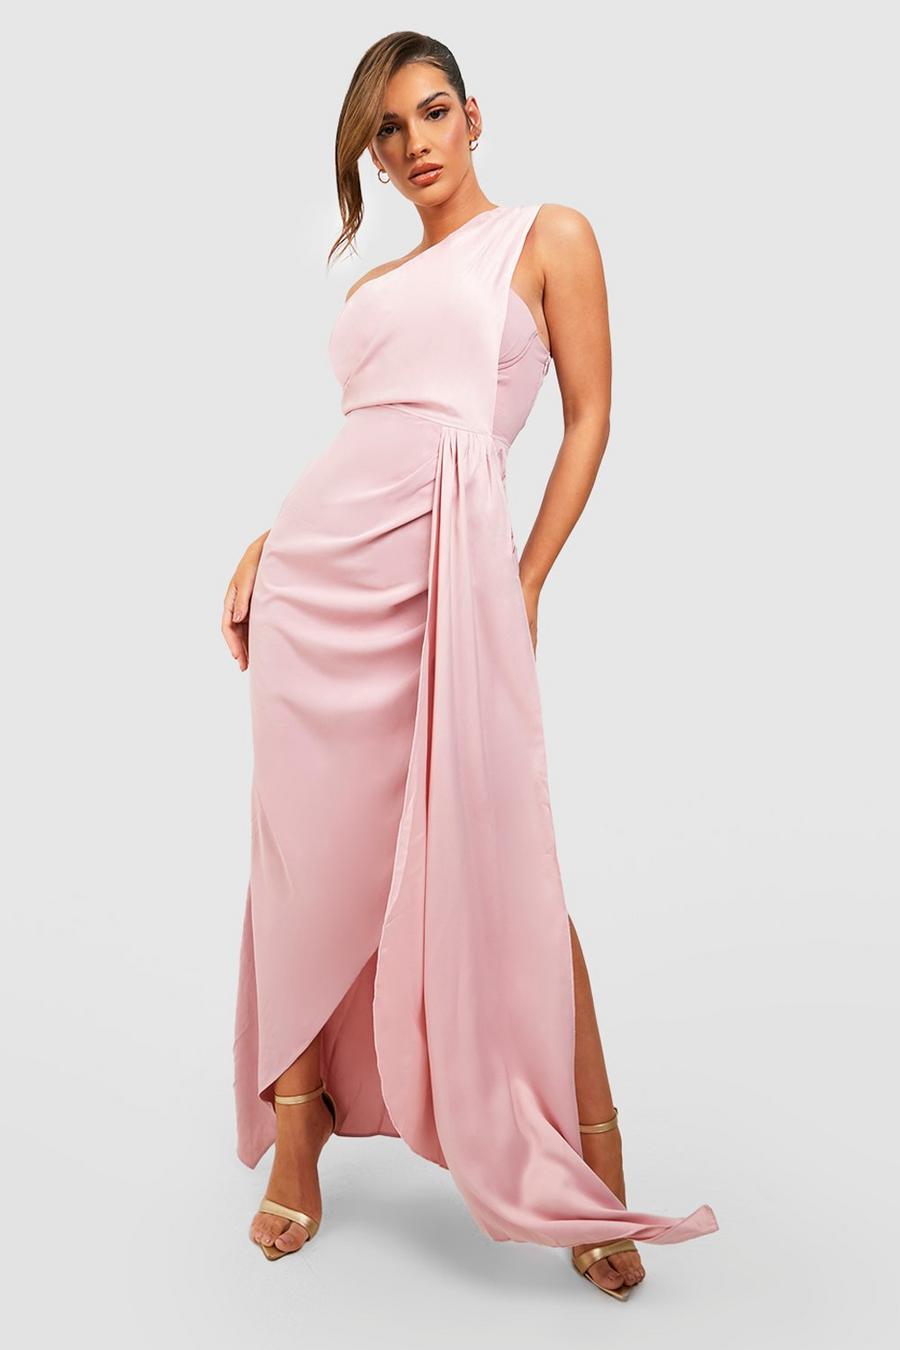 Blush rosa Satin Drape One Shoulder Maxi Dress